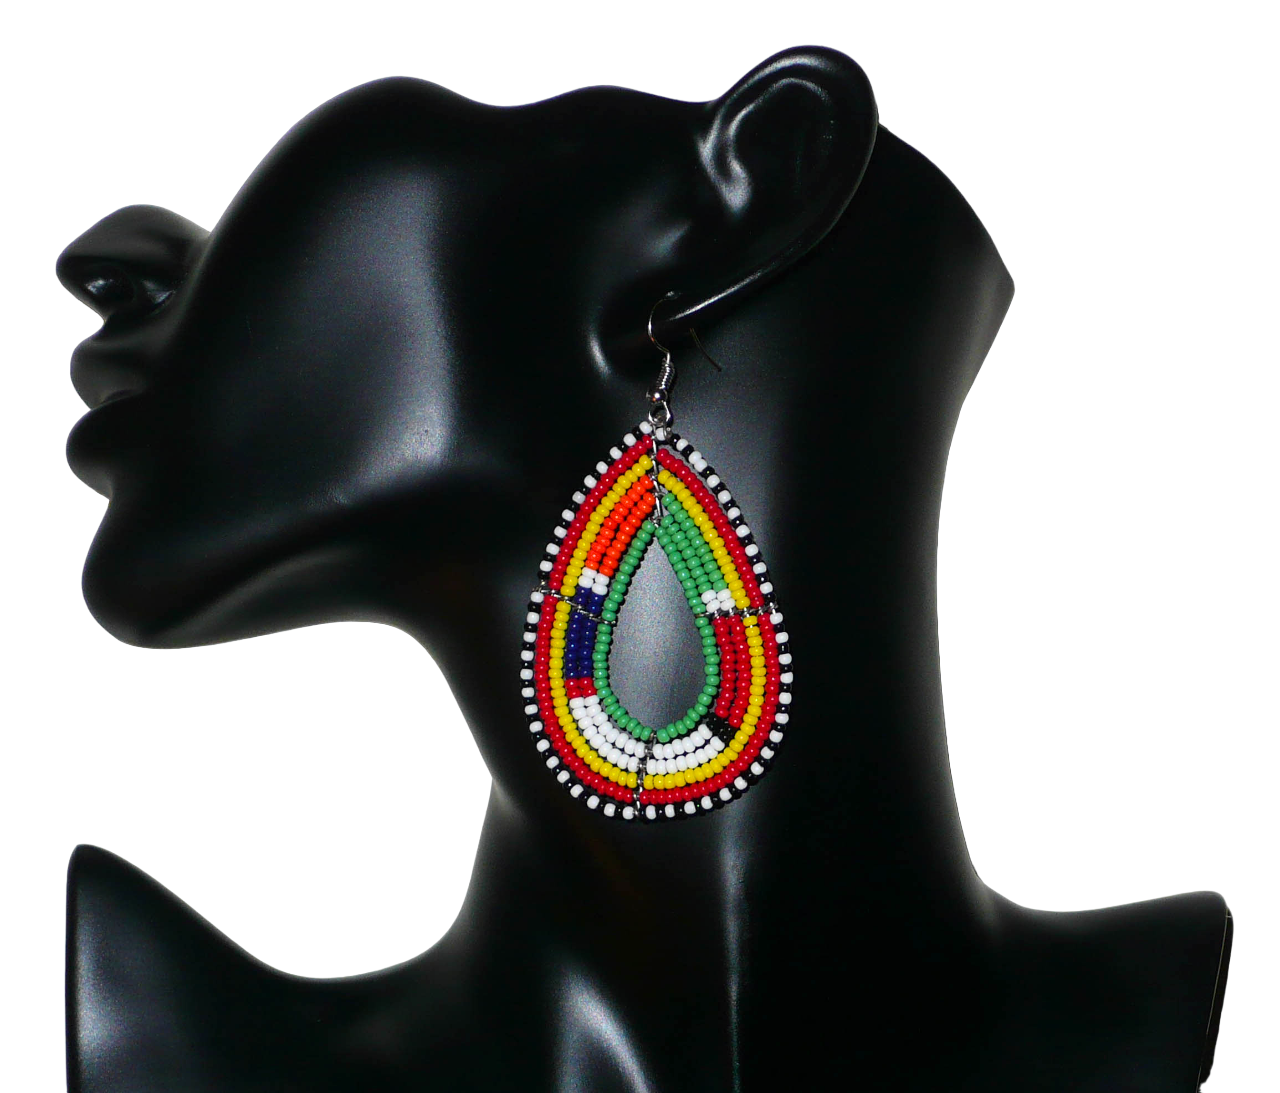 Boucles d'oreilles africaines à motifs ethniques Massai composées de perles de rocaille vertes et multicolores enfilées sur des fils de fer montés en forme de gouttes. Elles mesurent 8 cm de long et 4 cm de large et se portent avec des crochets en acier inoxydable sur des oreilles percées. Timeless Fineries